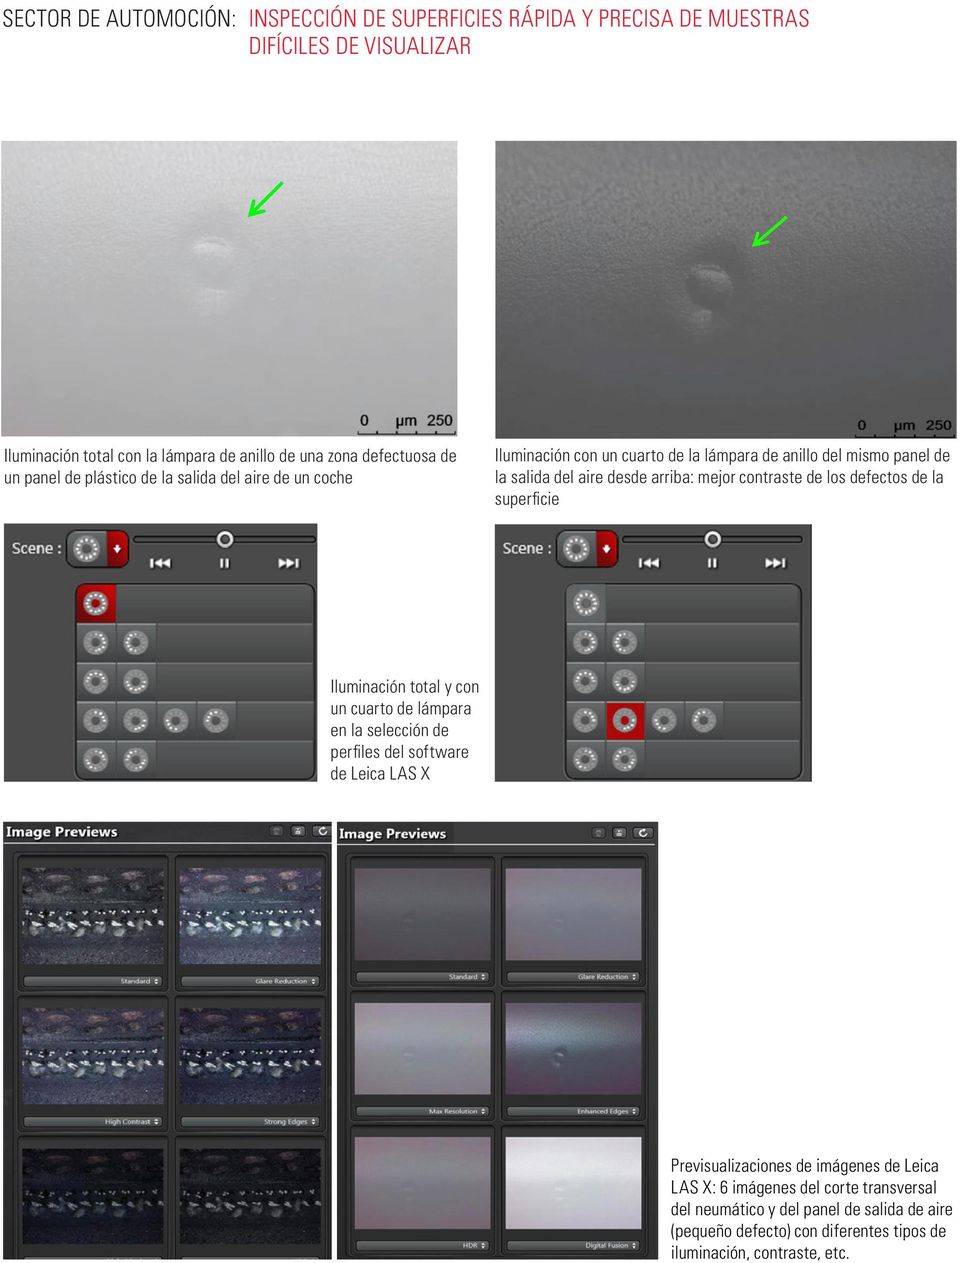 Iluminación total y con un cuarto de lámpara en la selección de perfiles del software de Leica LAS X Previsualizaciones de imágenes de Leica